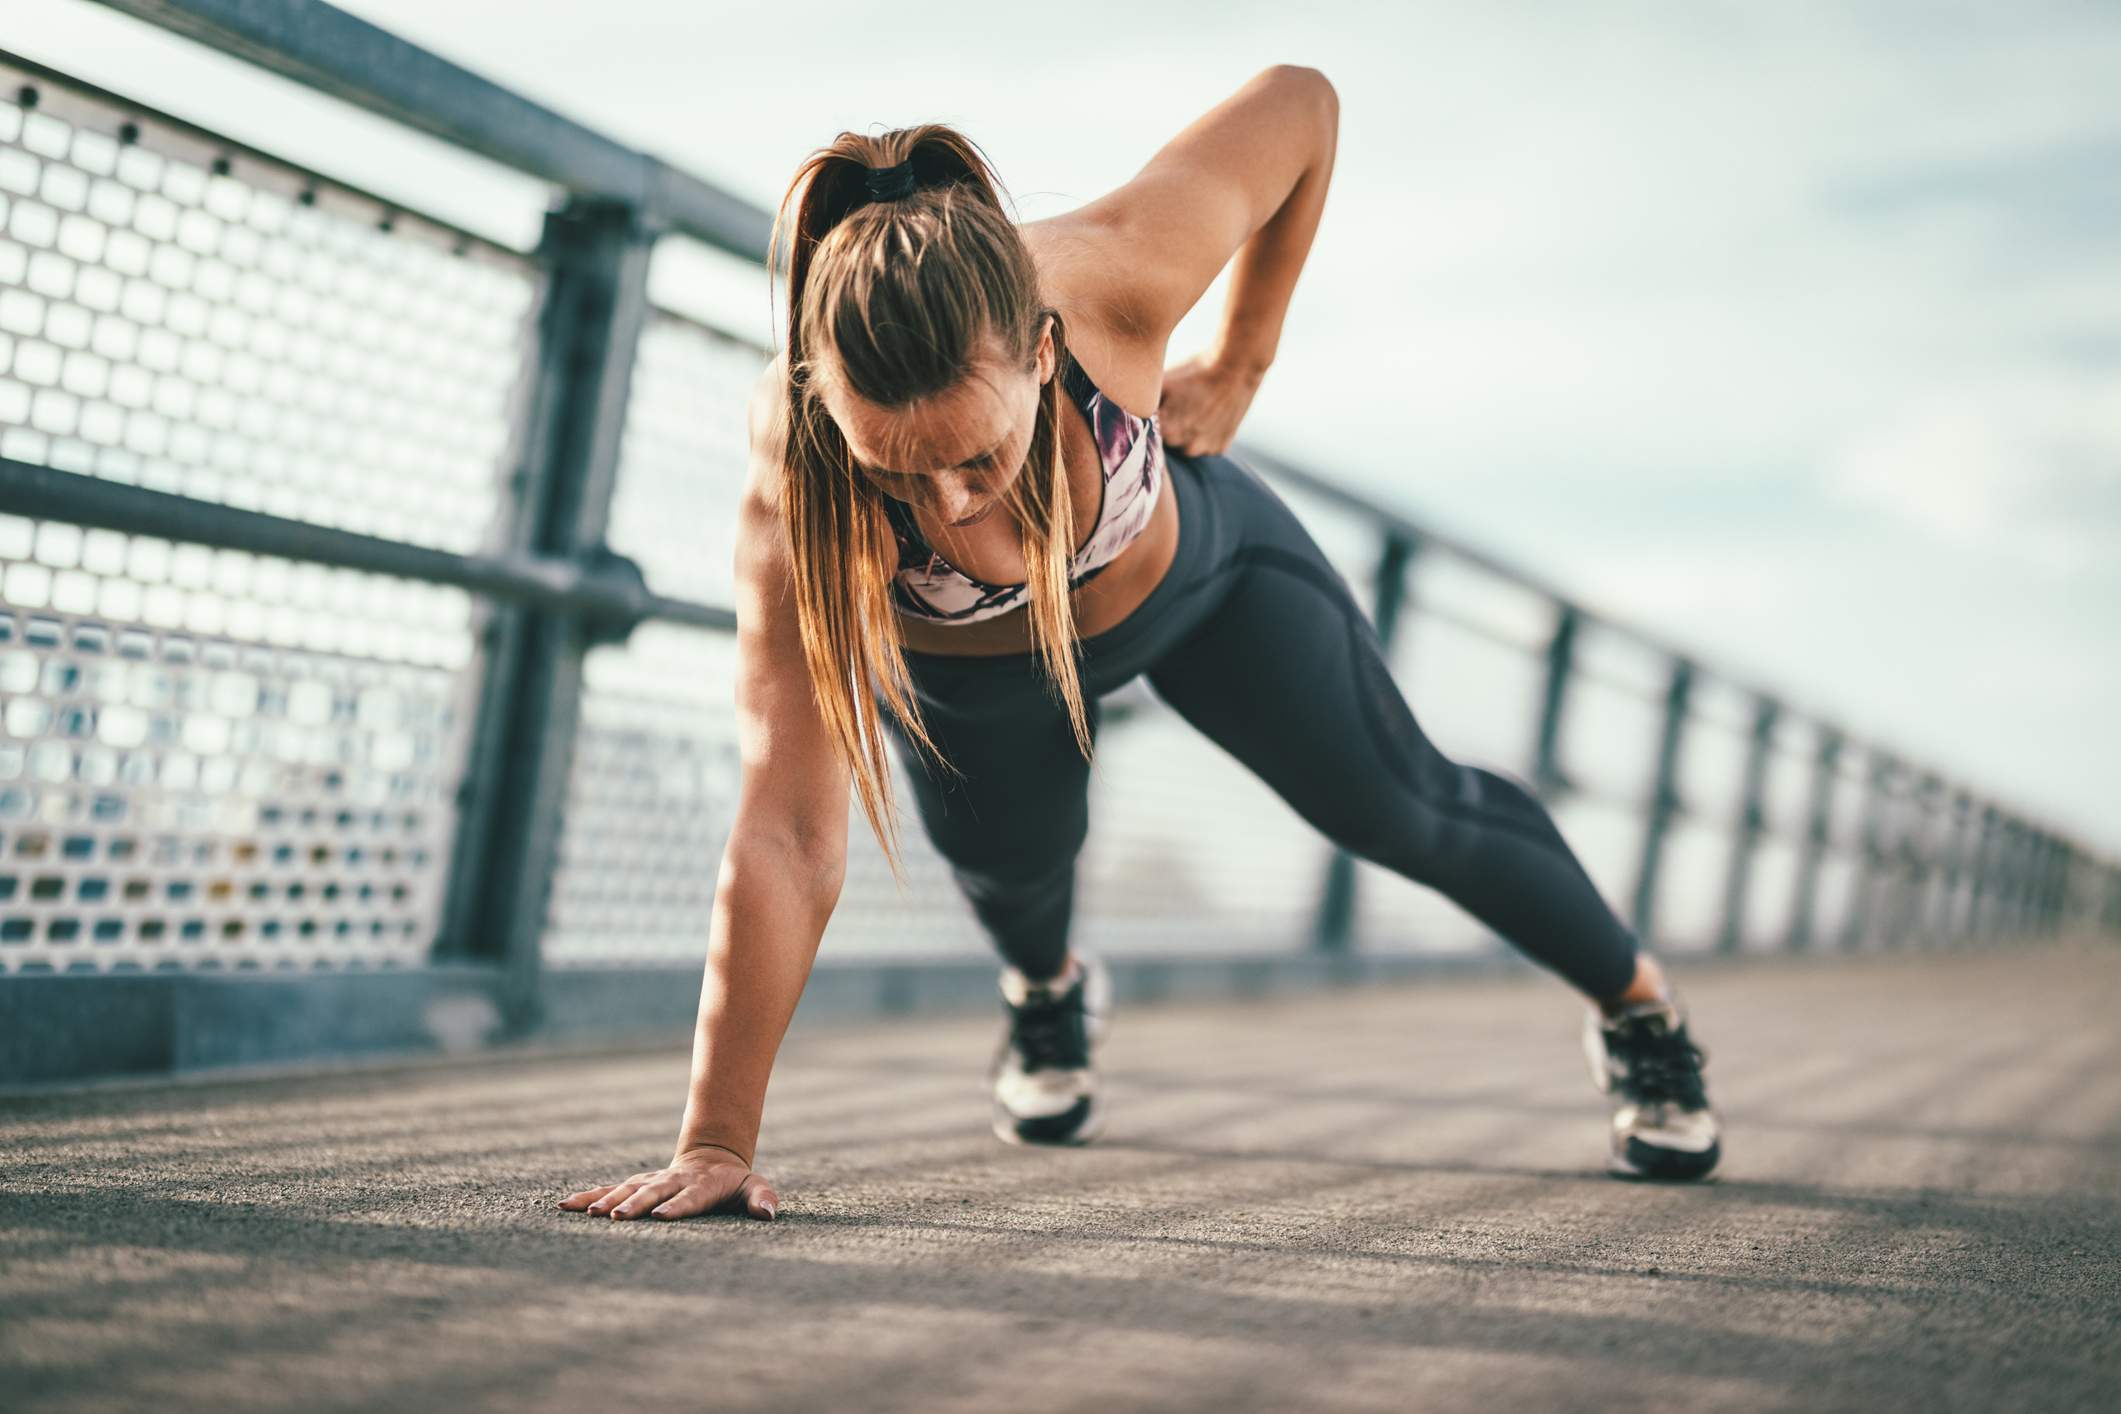 Travailler vos muscles en faisant du renforcement musculaire permet d'améliorer ses performances en course à pied.